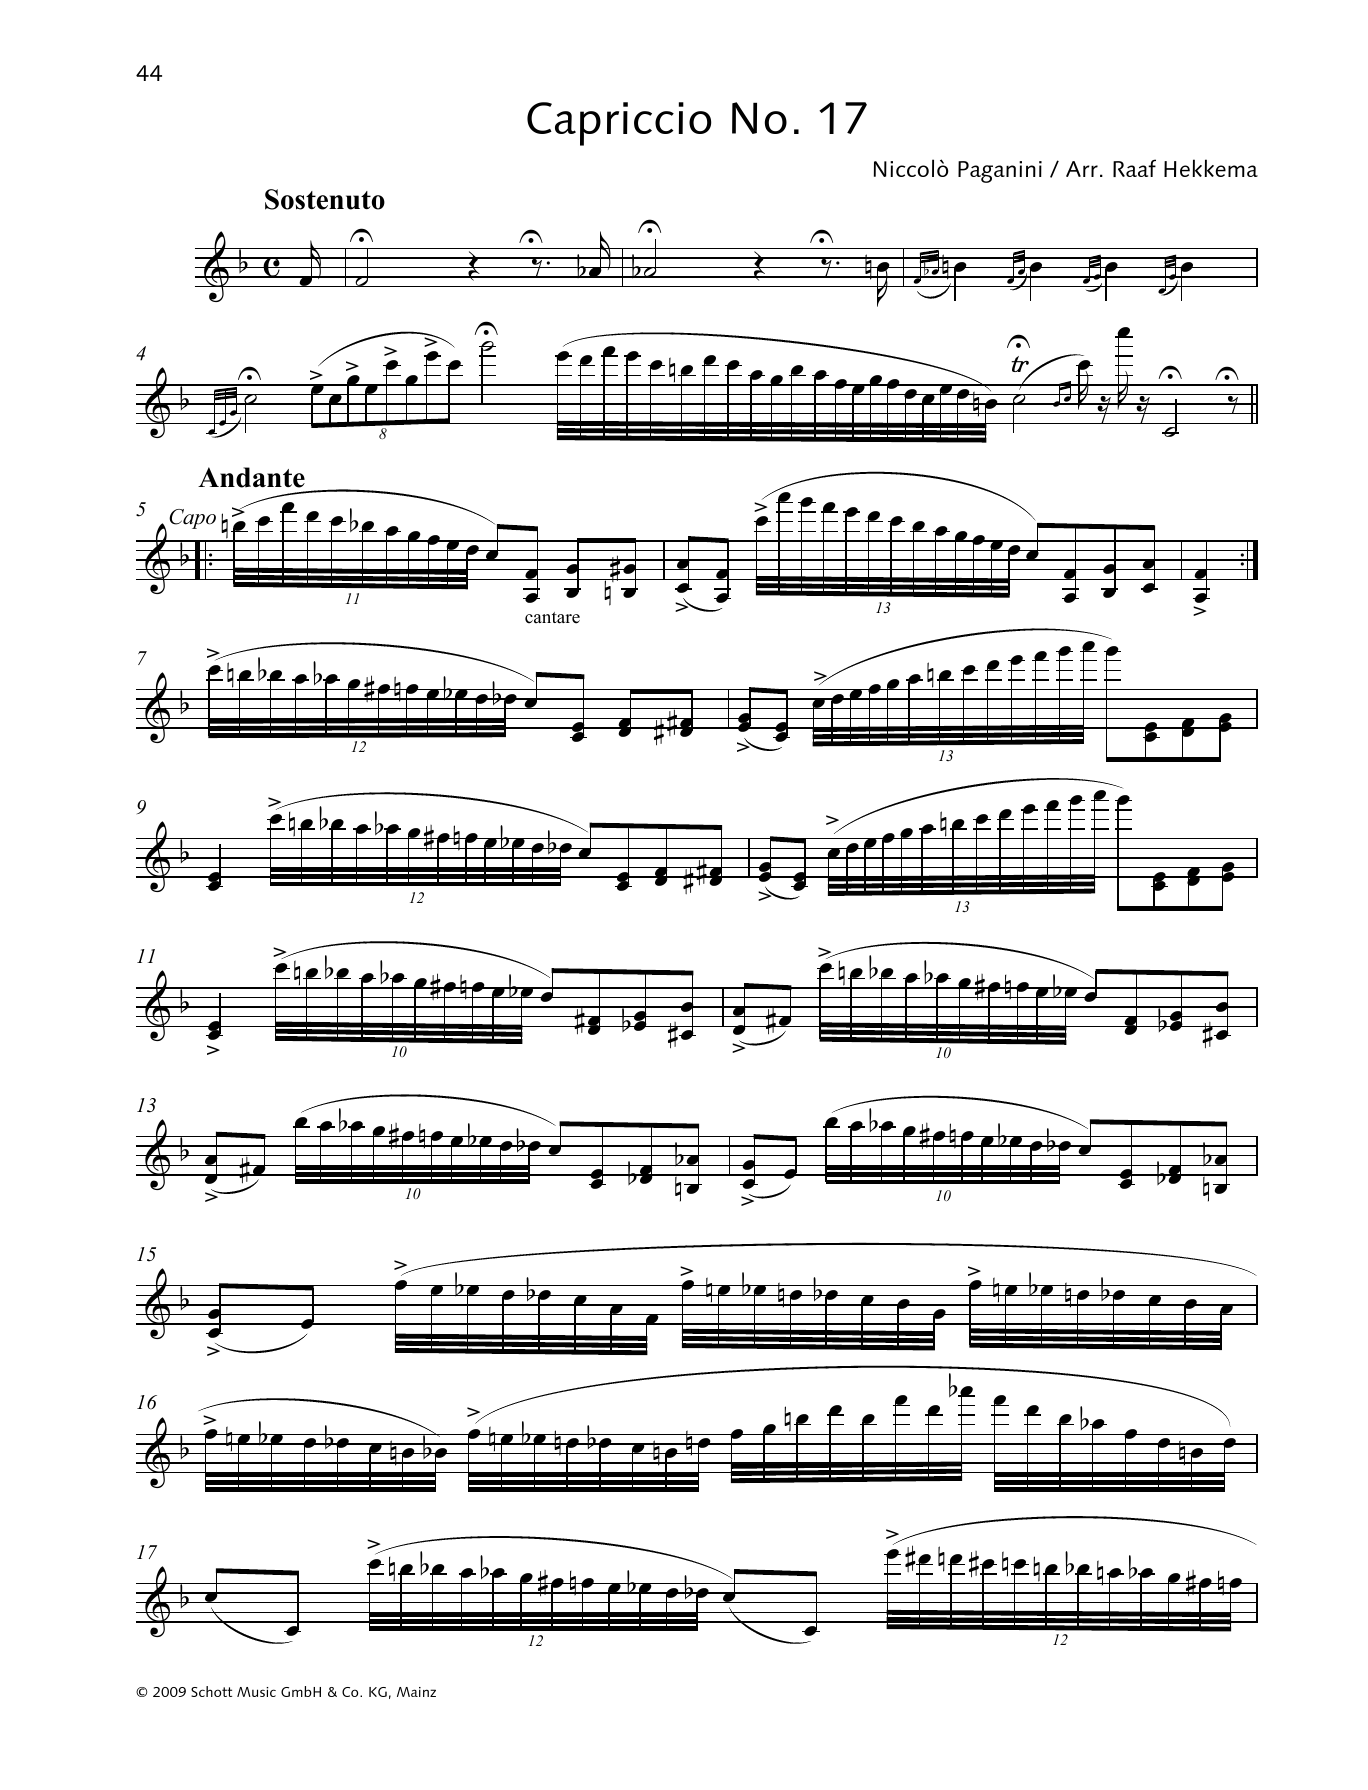 Download Niccolo Paganini Capriccio No. 17 Sheet Music